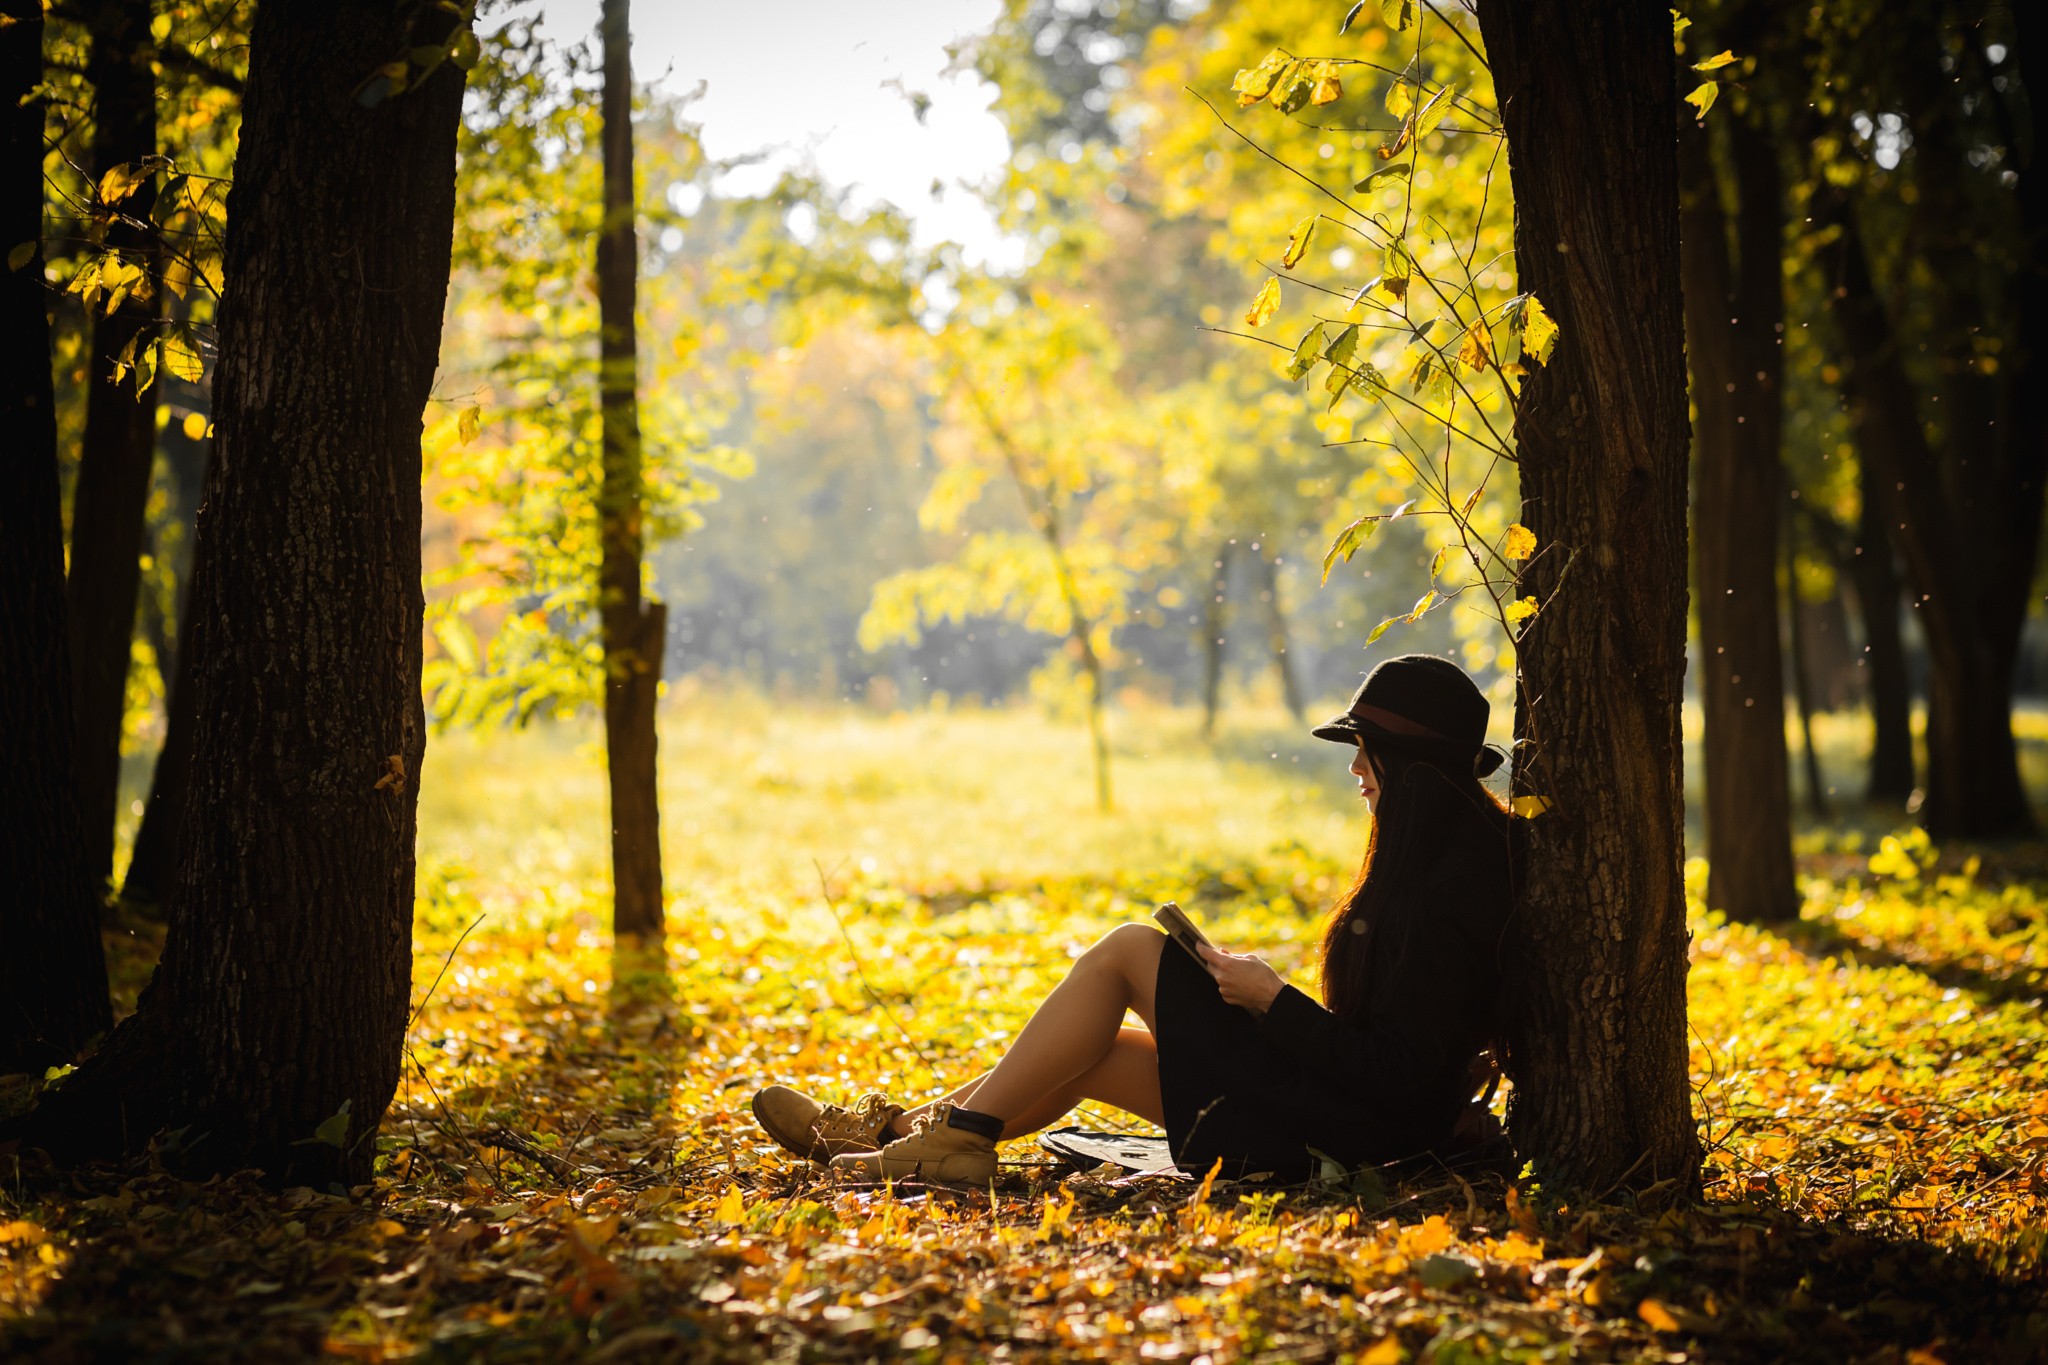 Women Model Brunette Long Hair Women Outdoors Sitting Black Dress Hat Reading Books Nature Trees For 2048x1365